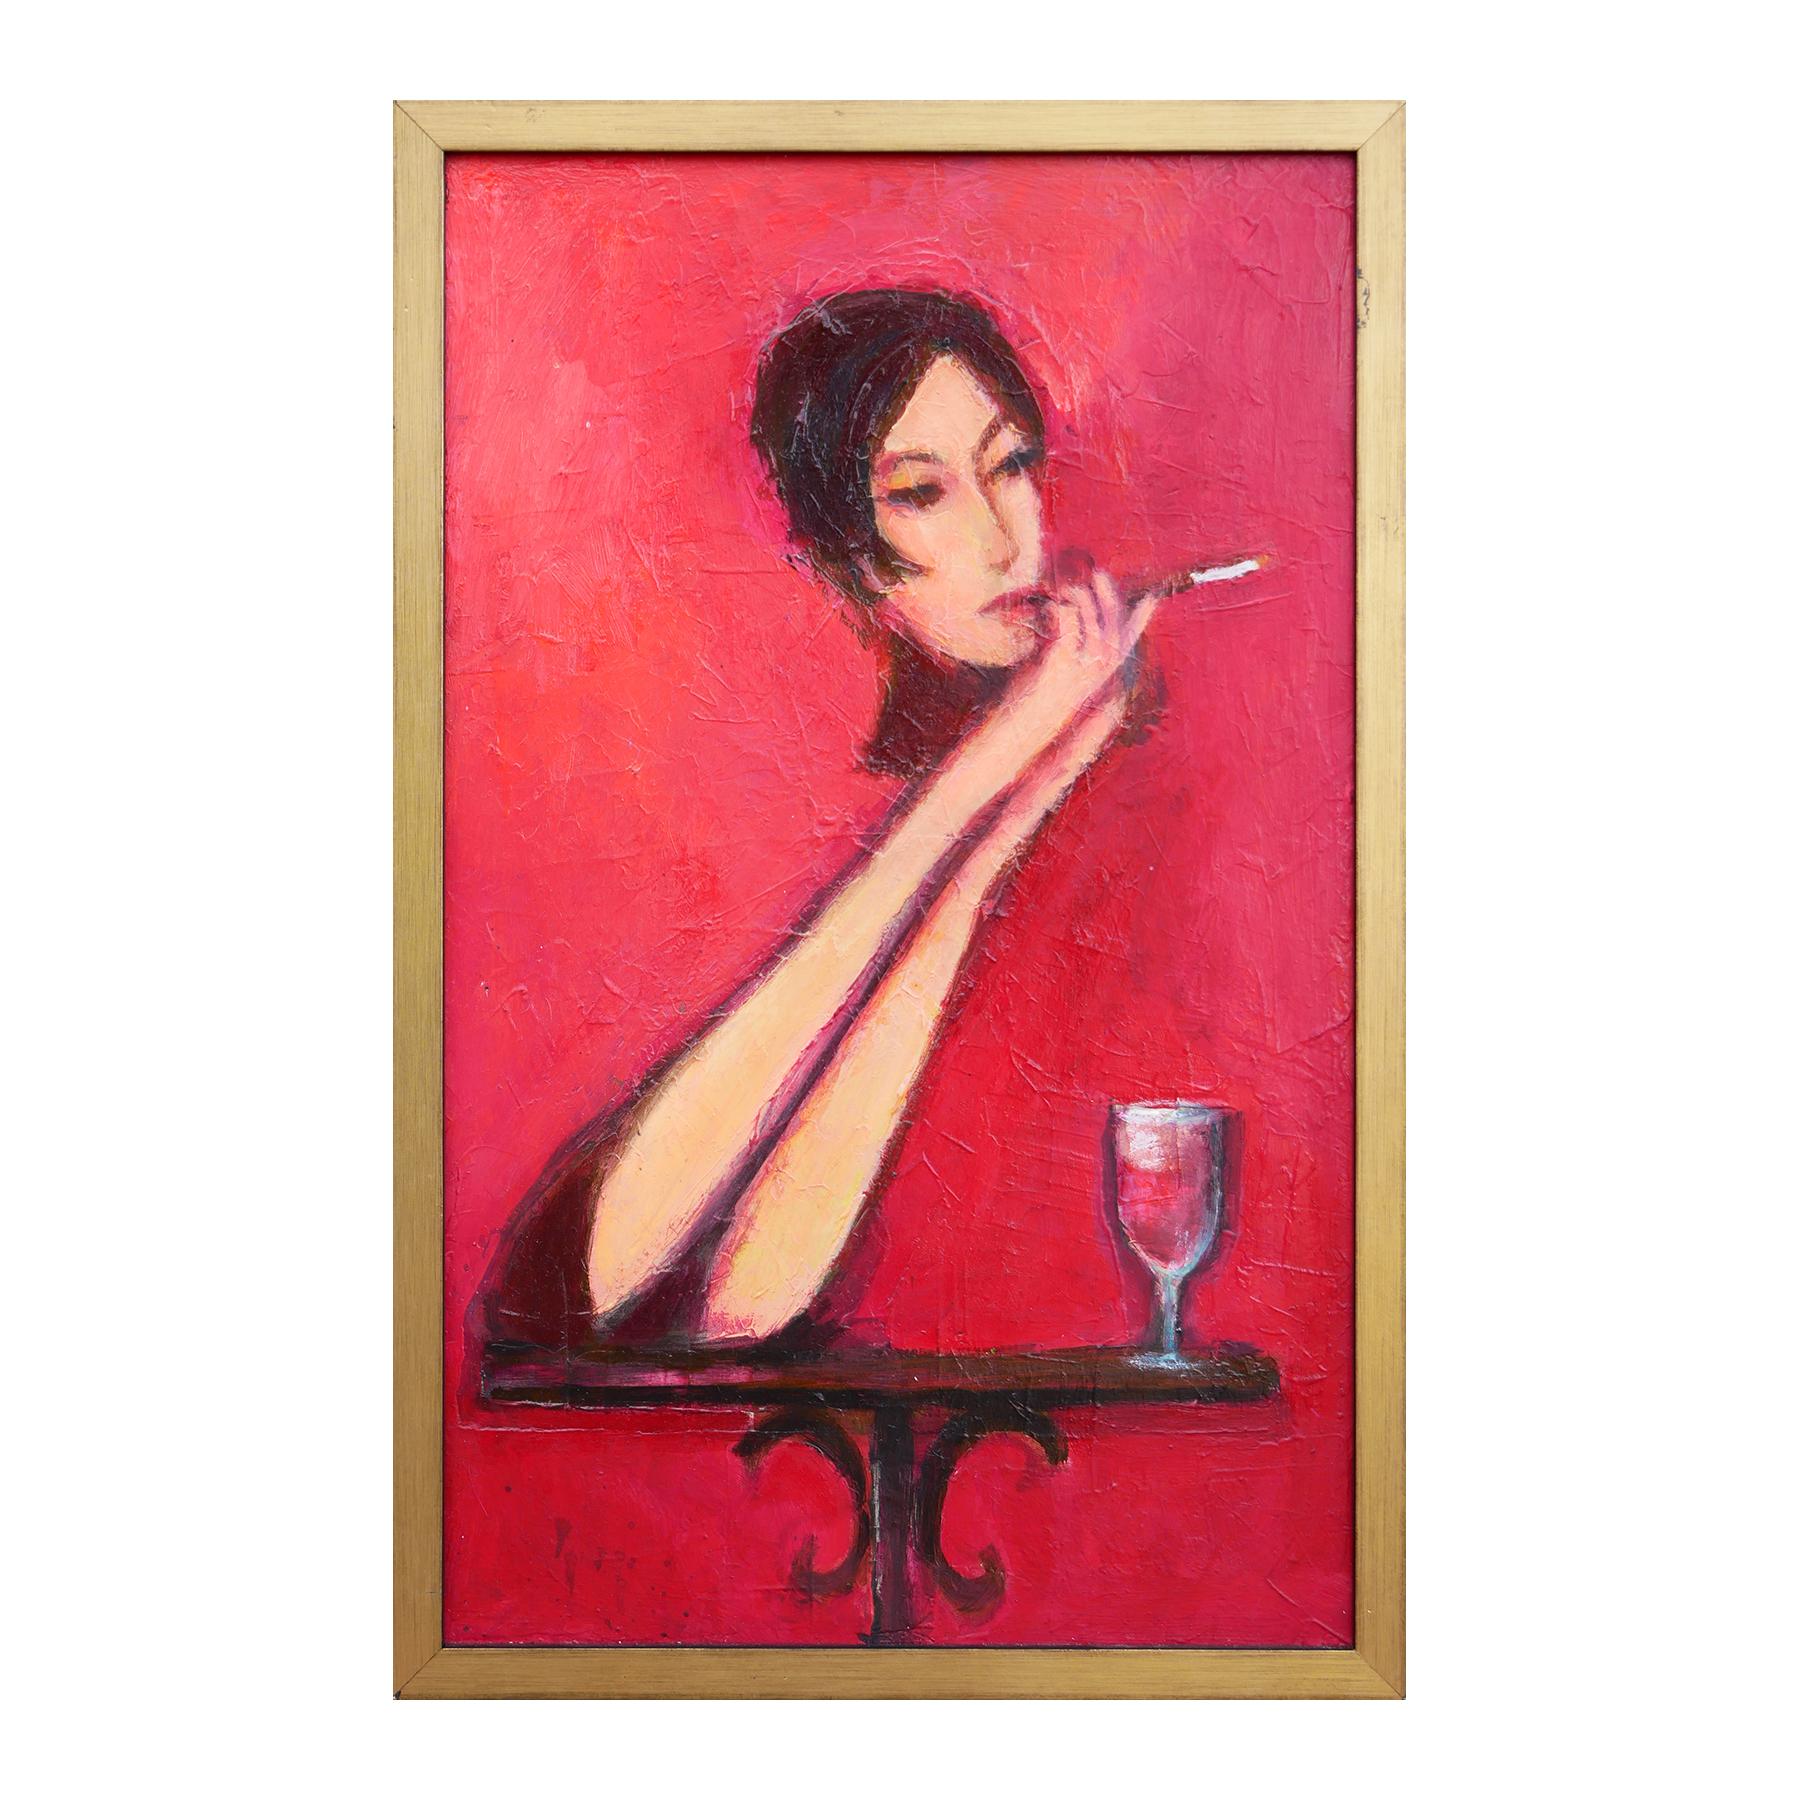 Lady with Cigarette - Peinture figurative abstraite aux tons rouges - Painting de David Adickes